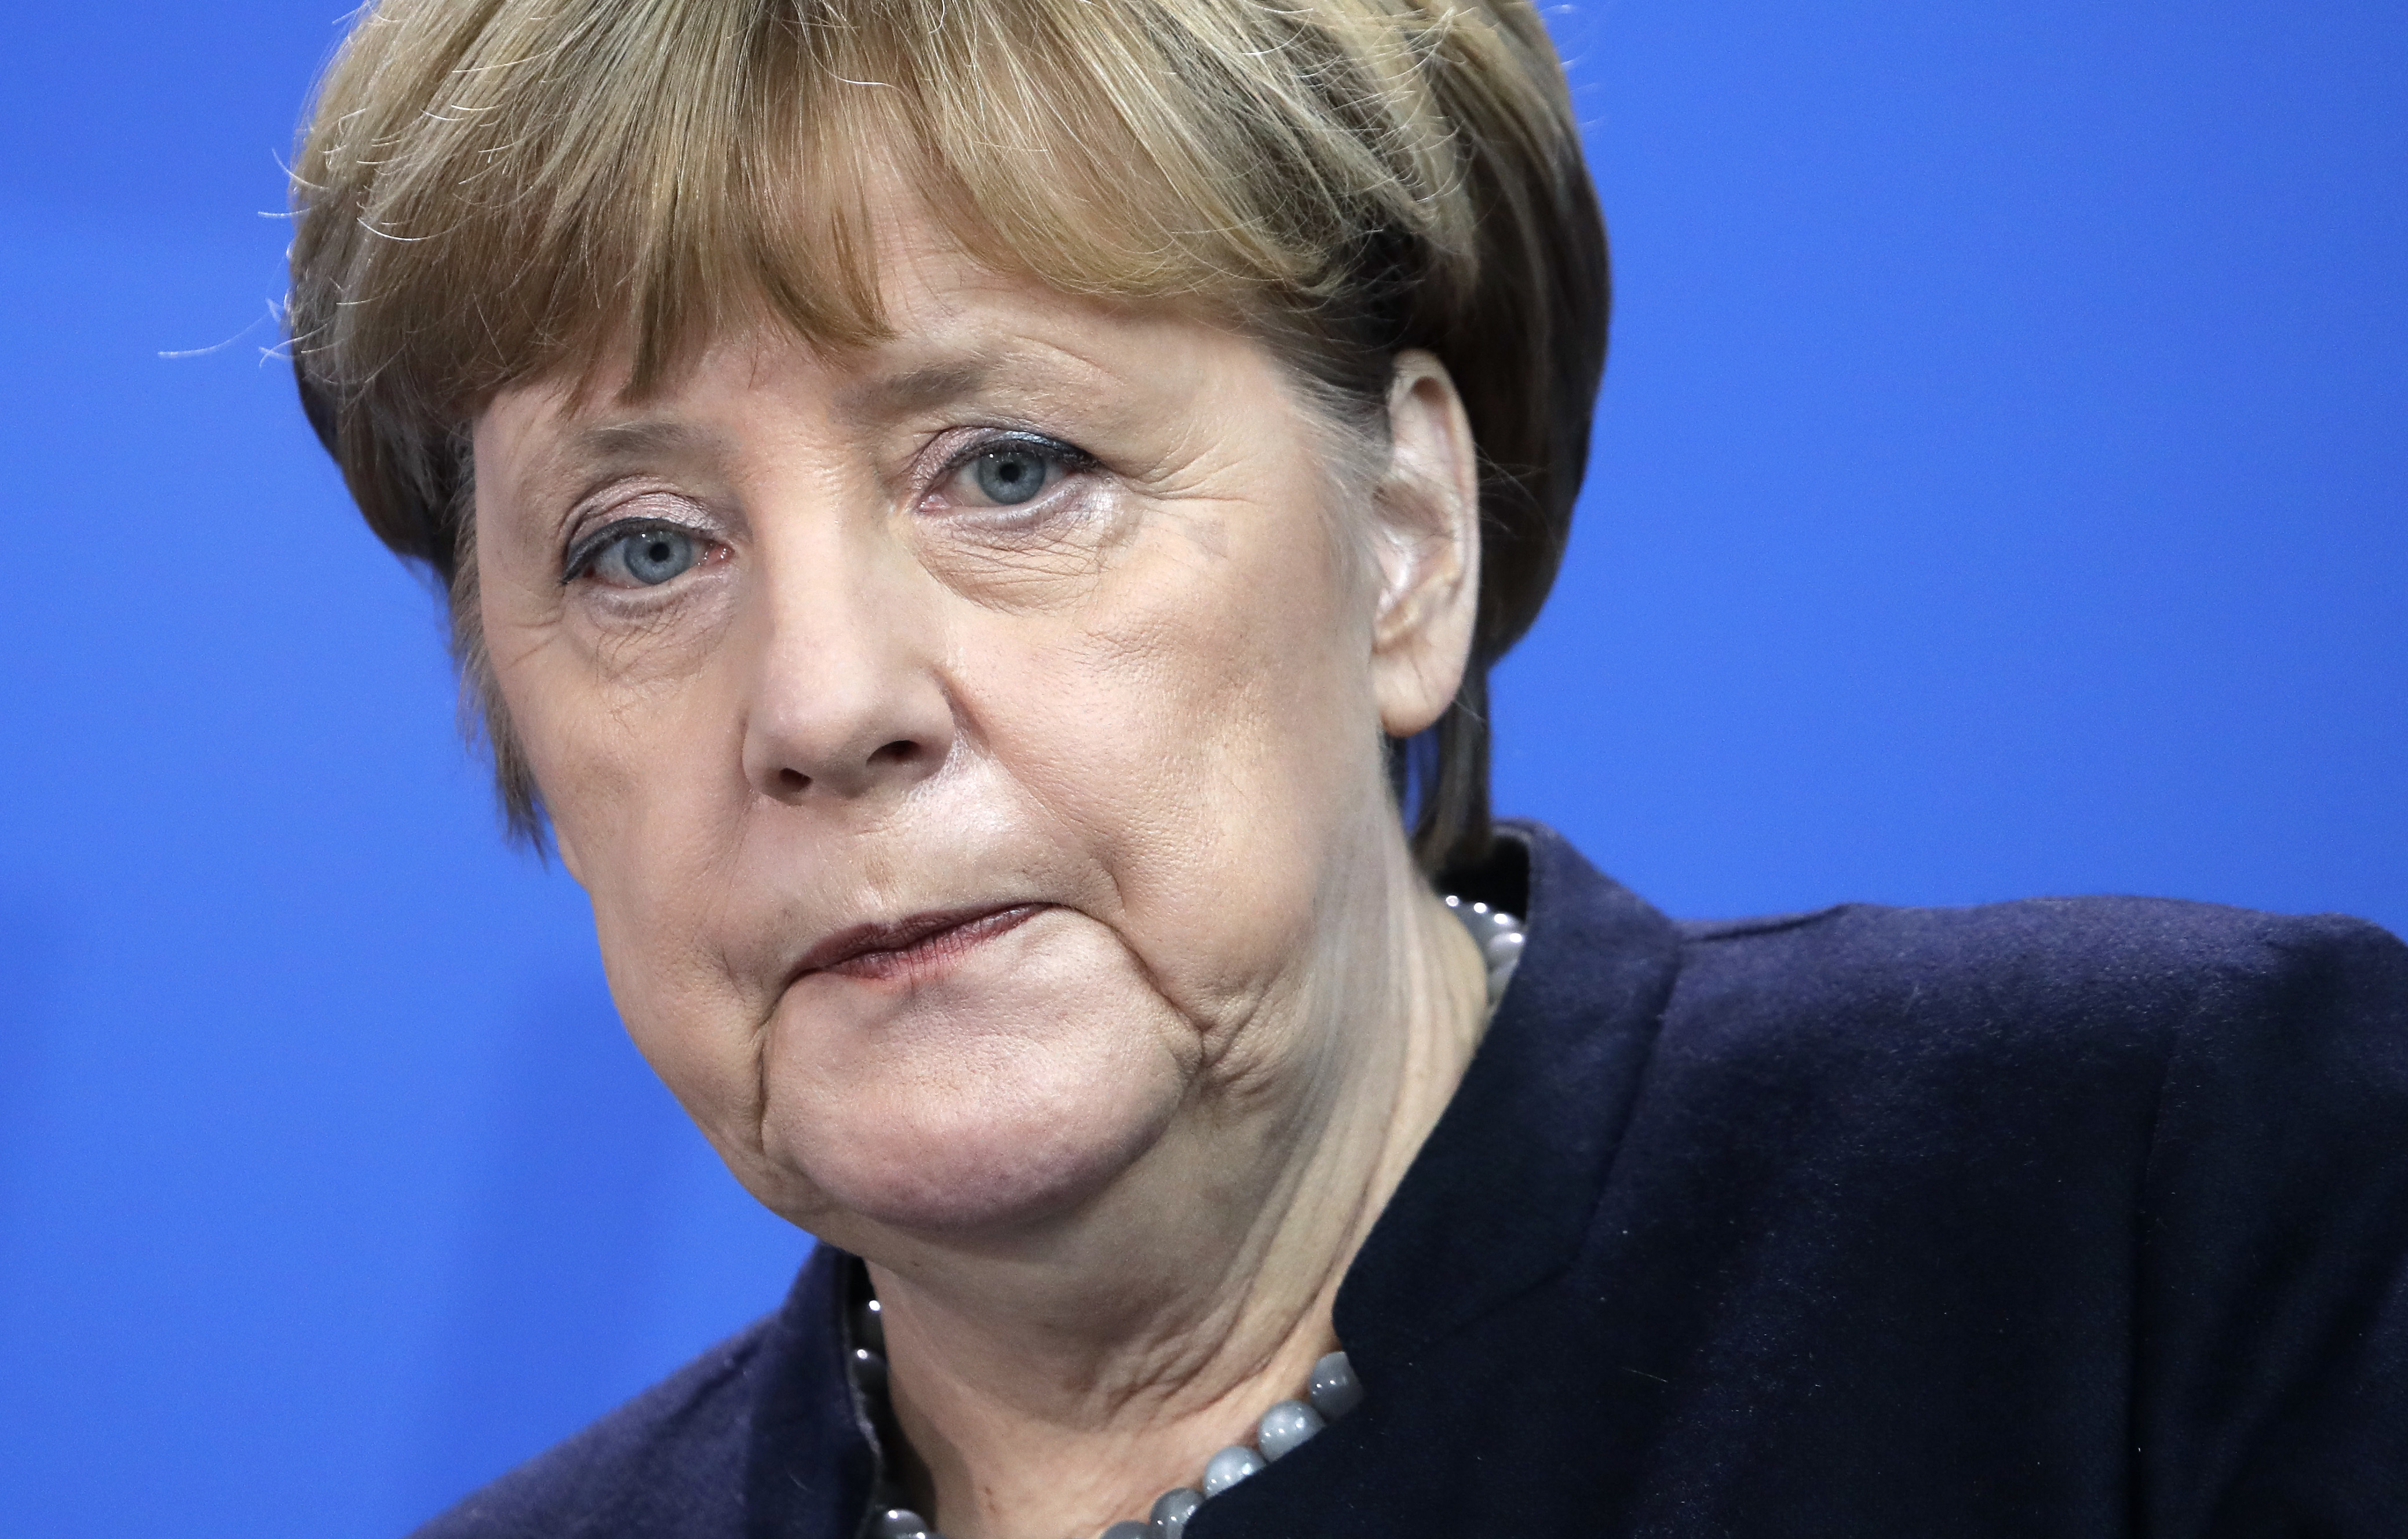 Меркел: Ще се търсят компромиси с Тръмп